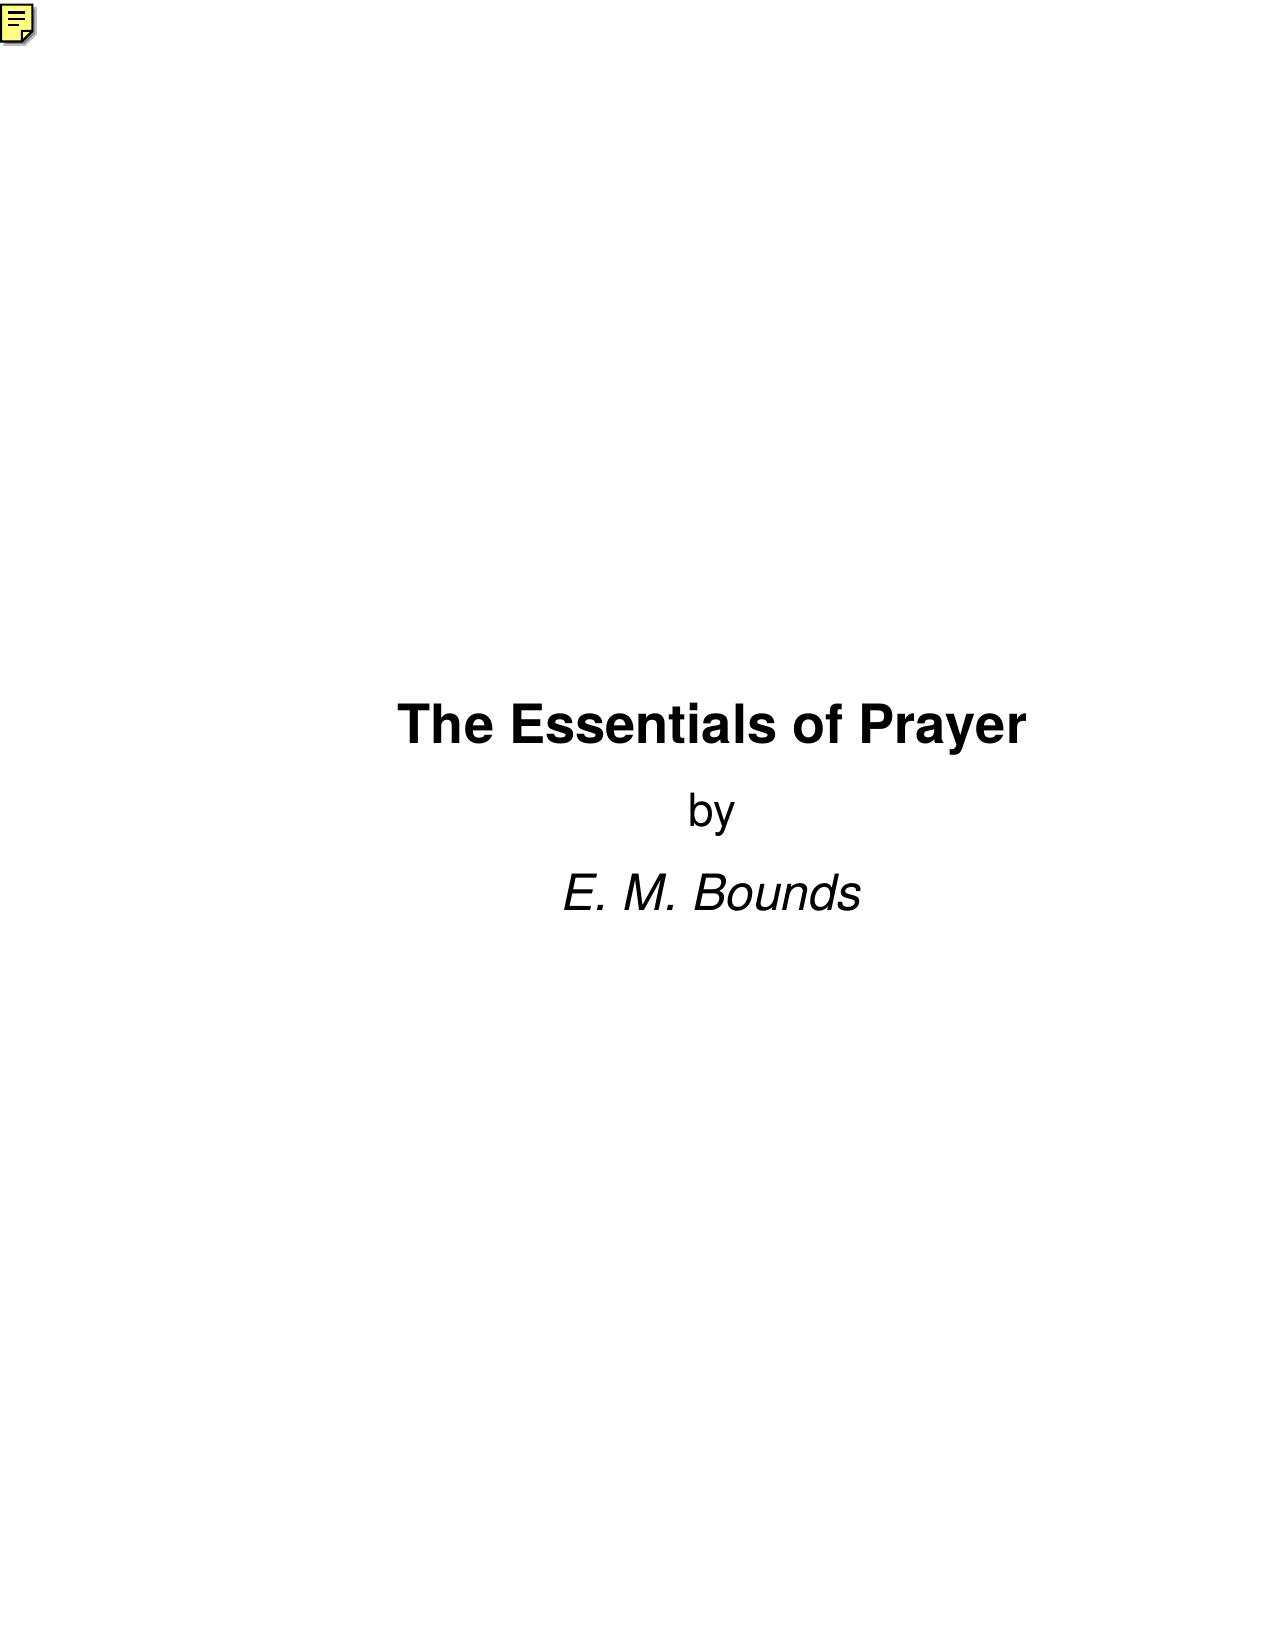 The Essentials of Prayer - E. M. Bounds by E. M. Bounds